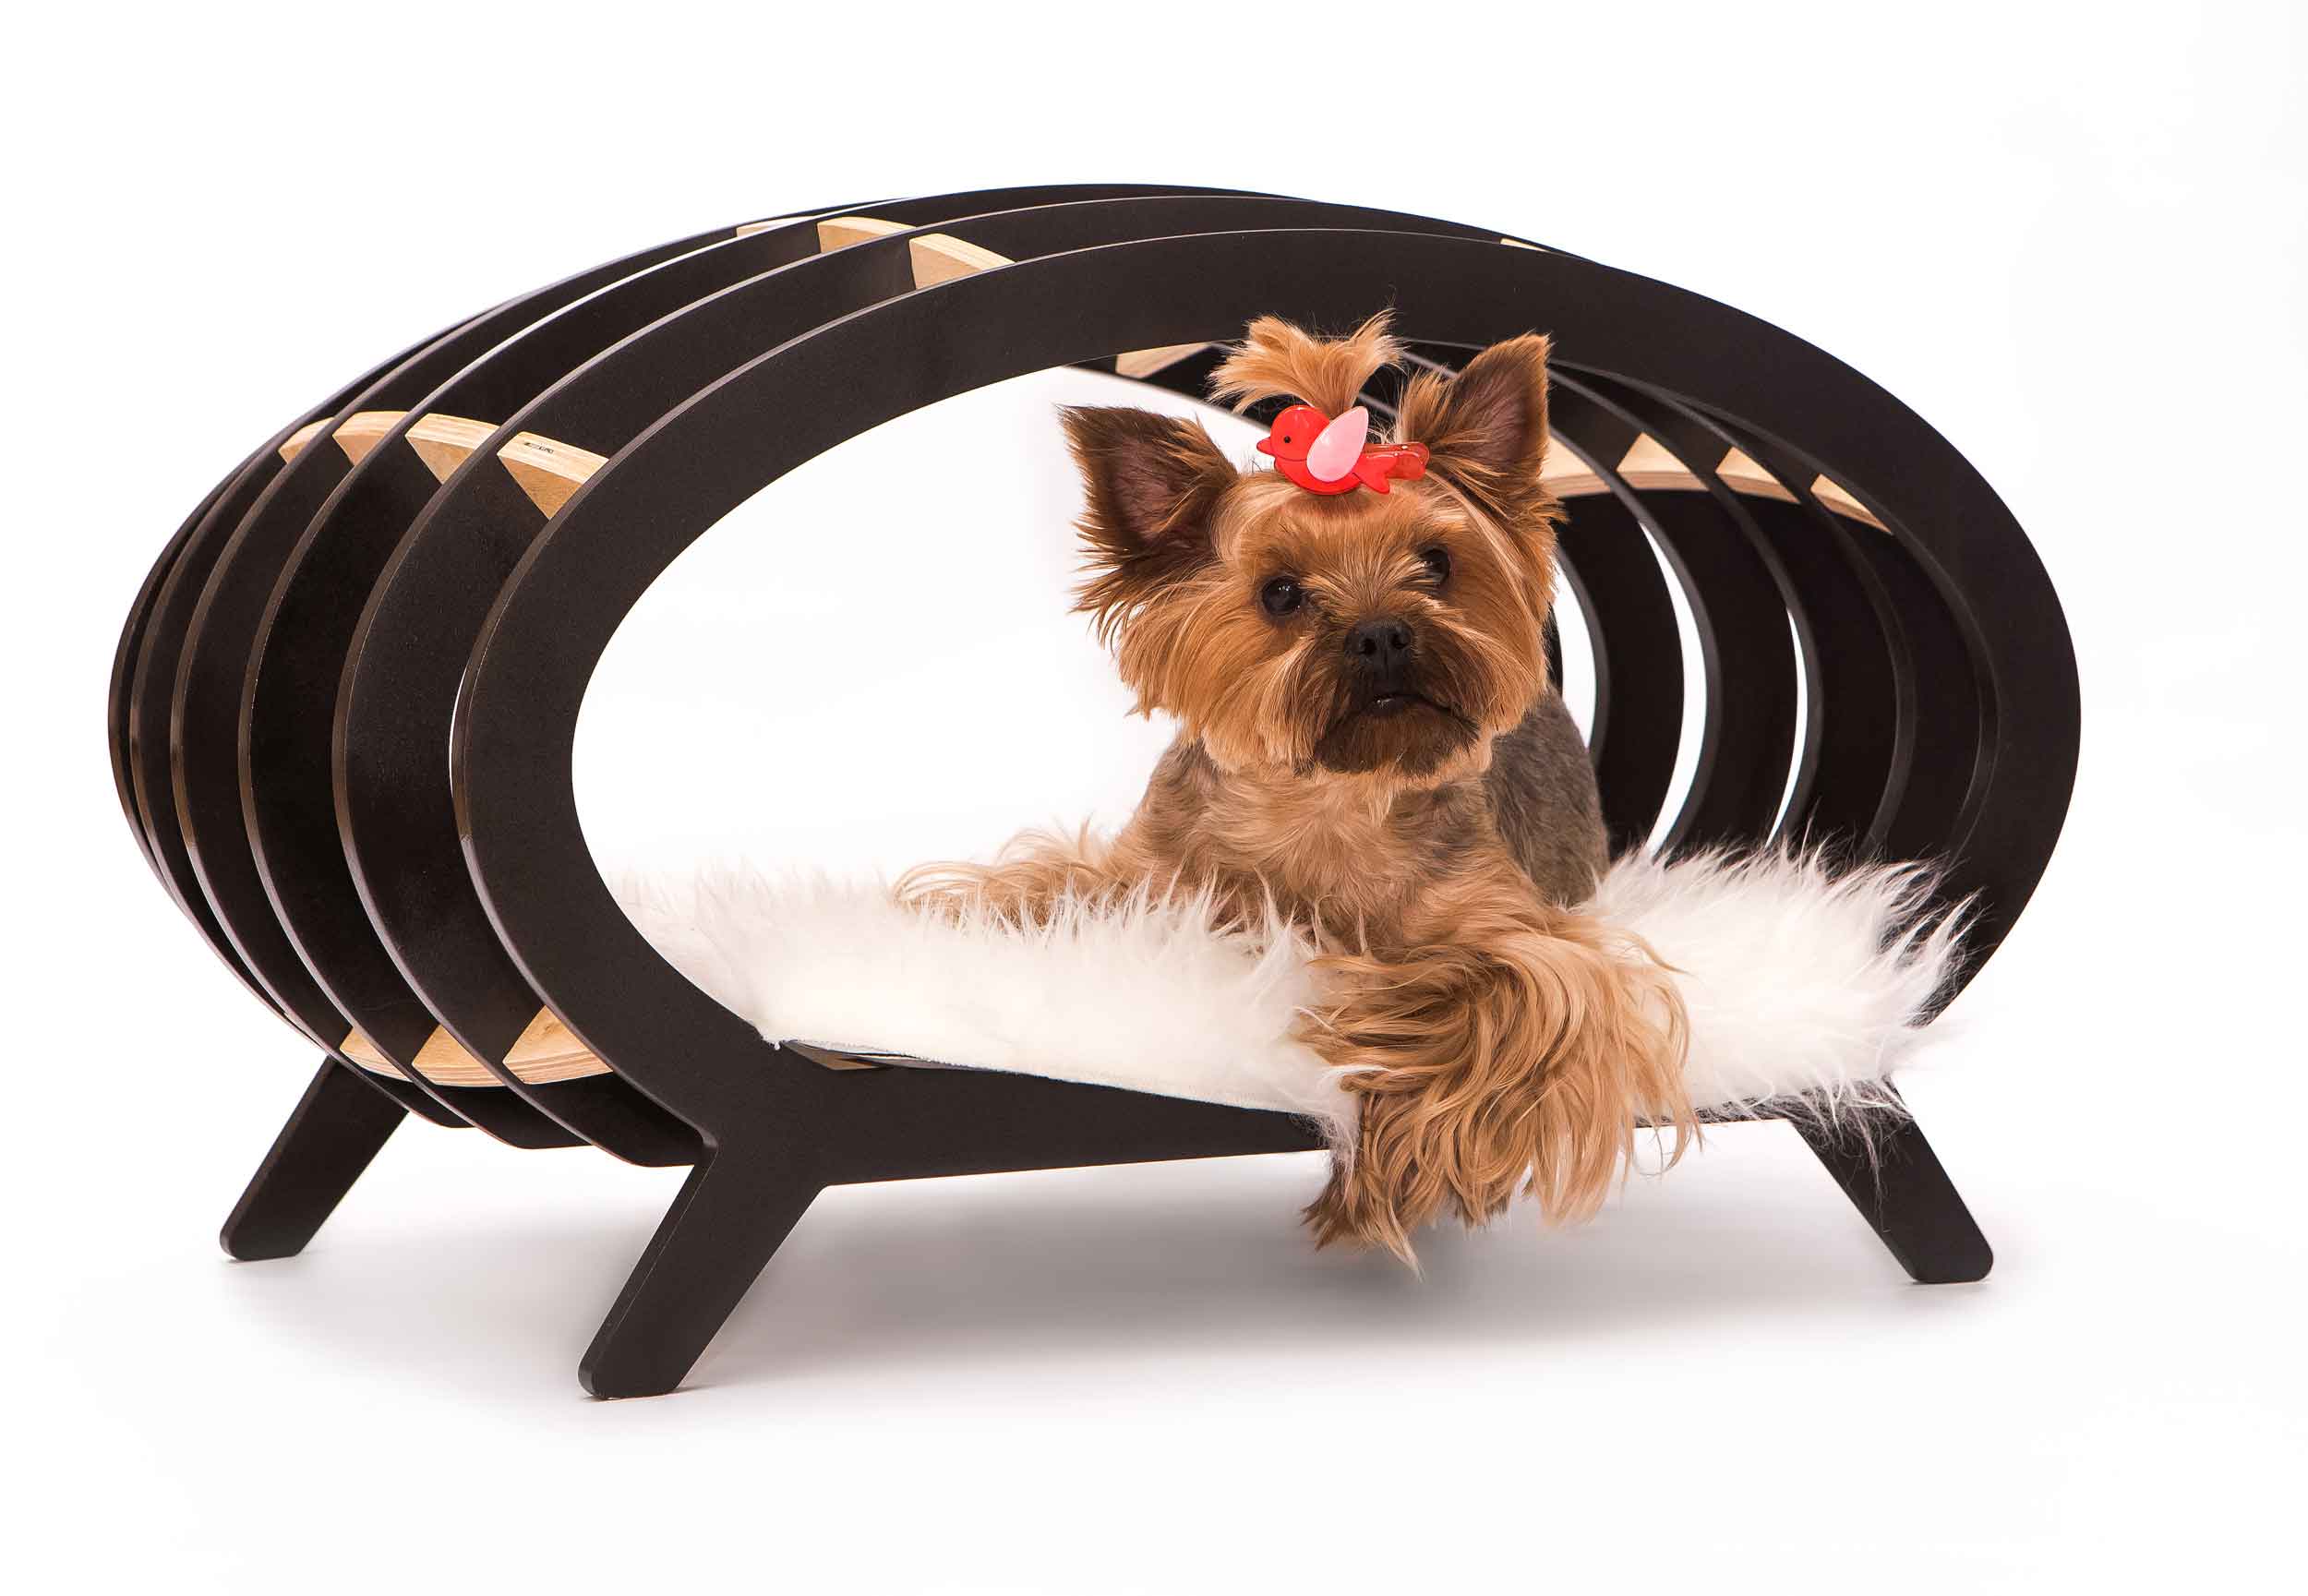 Лежак для собаки своими руками: необычные варианты из подручных материалов | звери дома